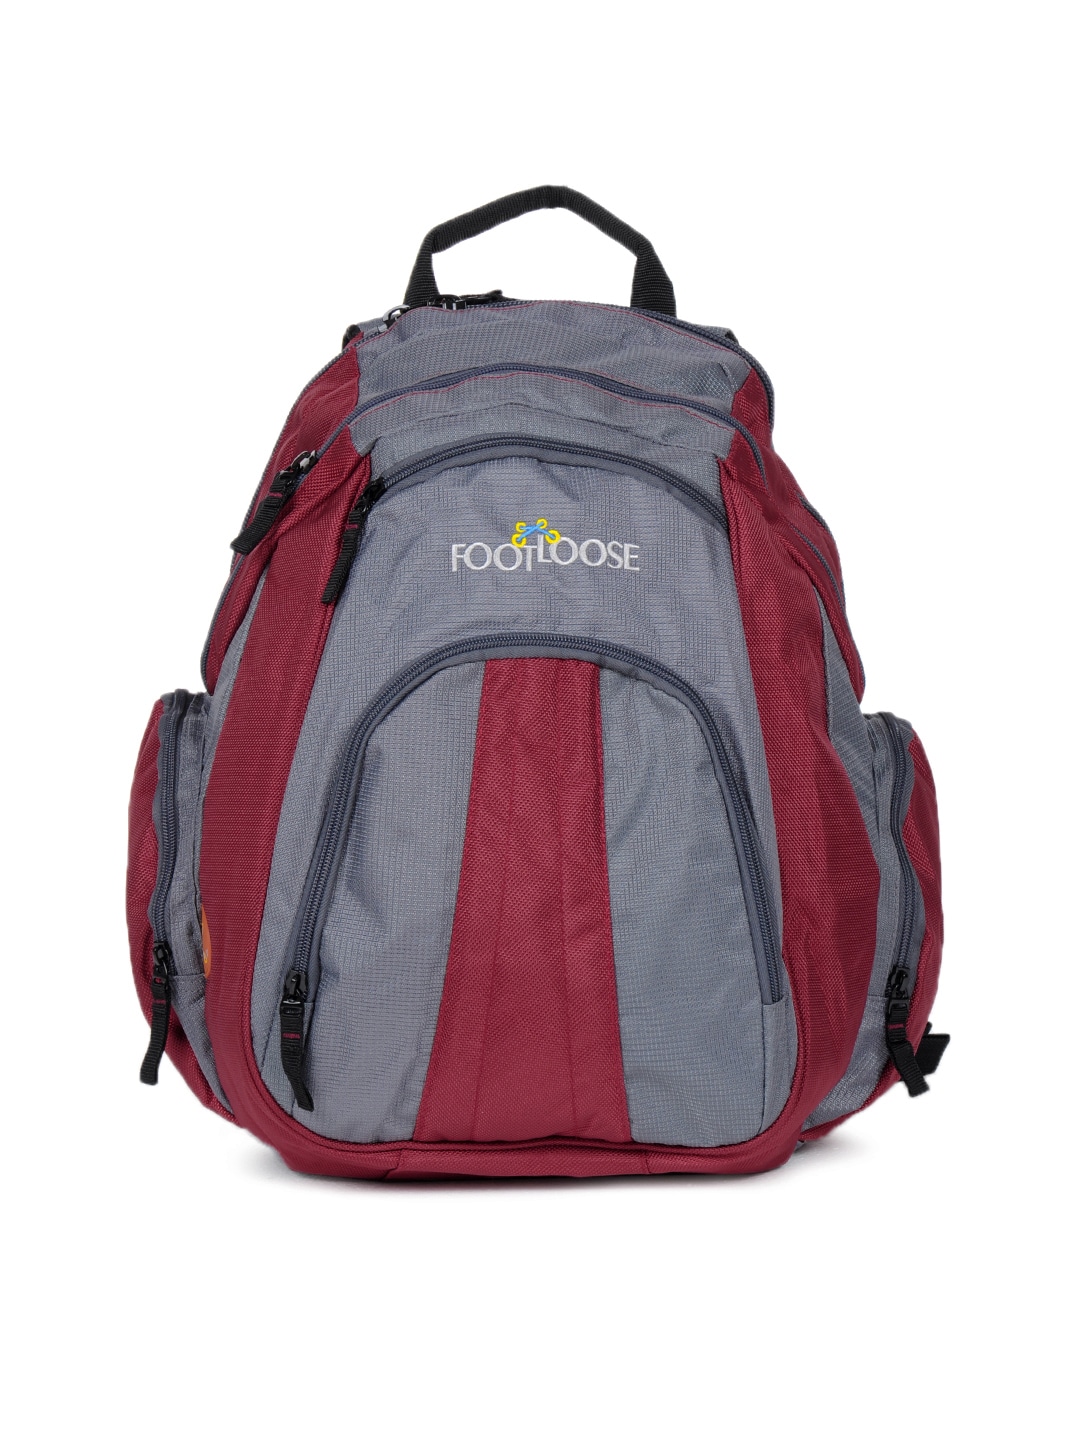 Footloose Unisex Grey Backpack